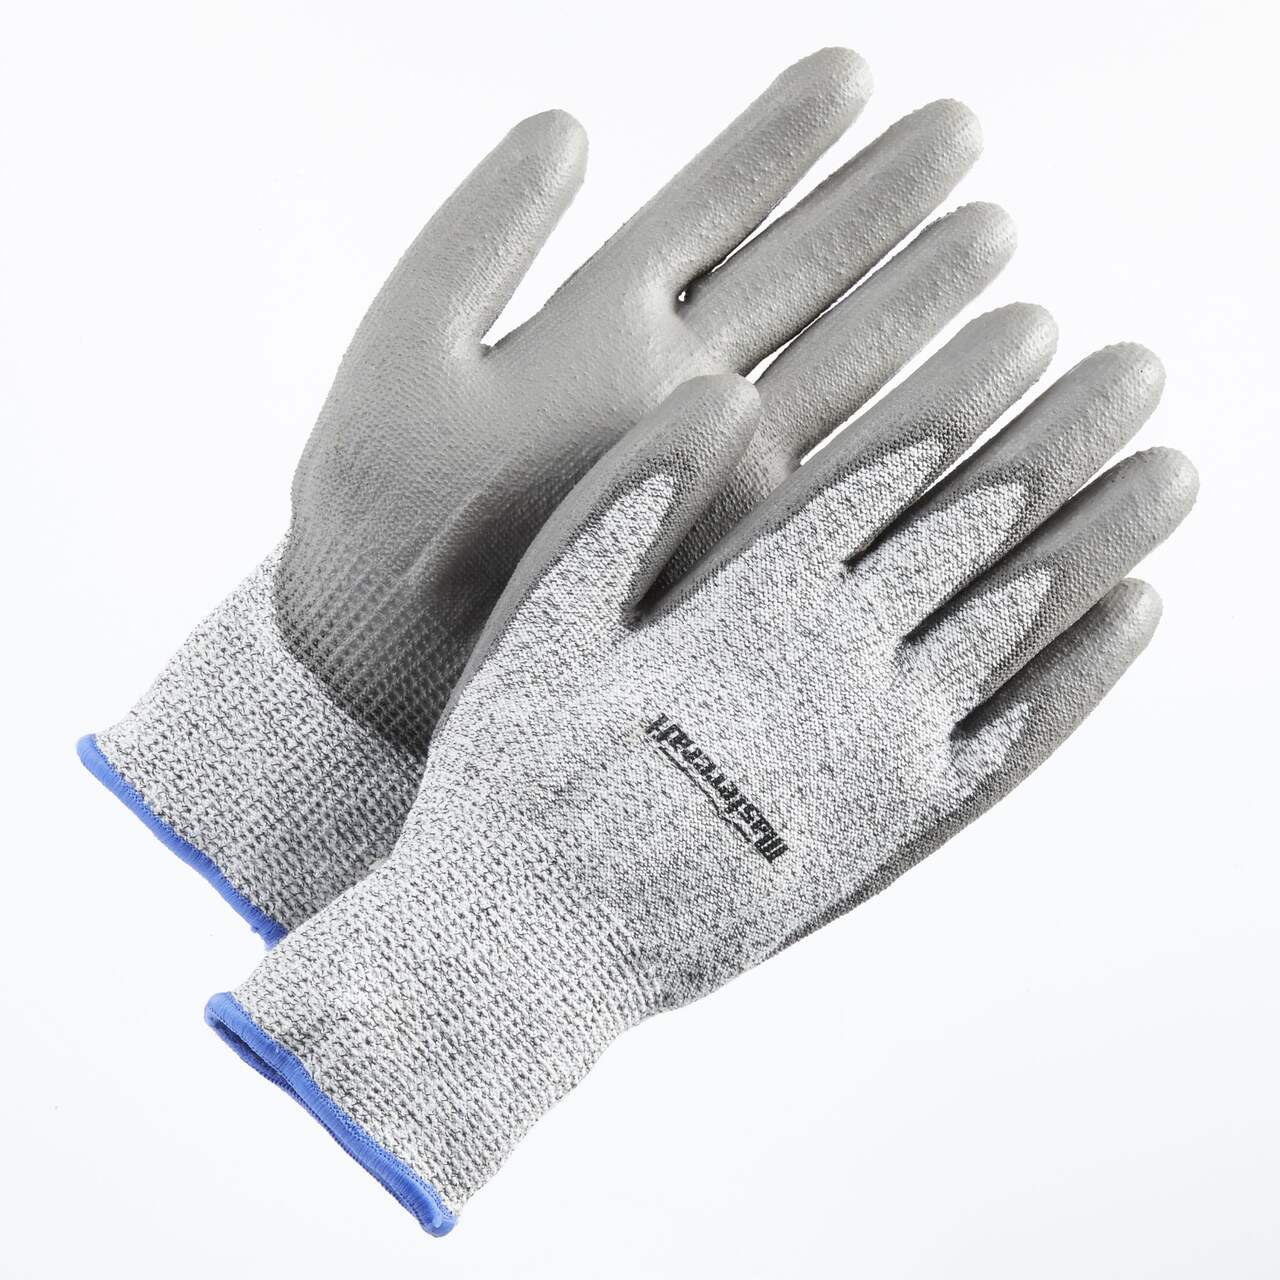 Mastercraft PU Dipped Level 5 Cut Resistant Elastic Cuff Glove